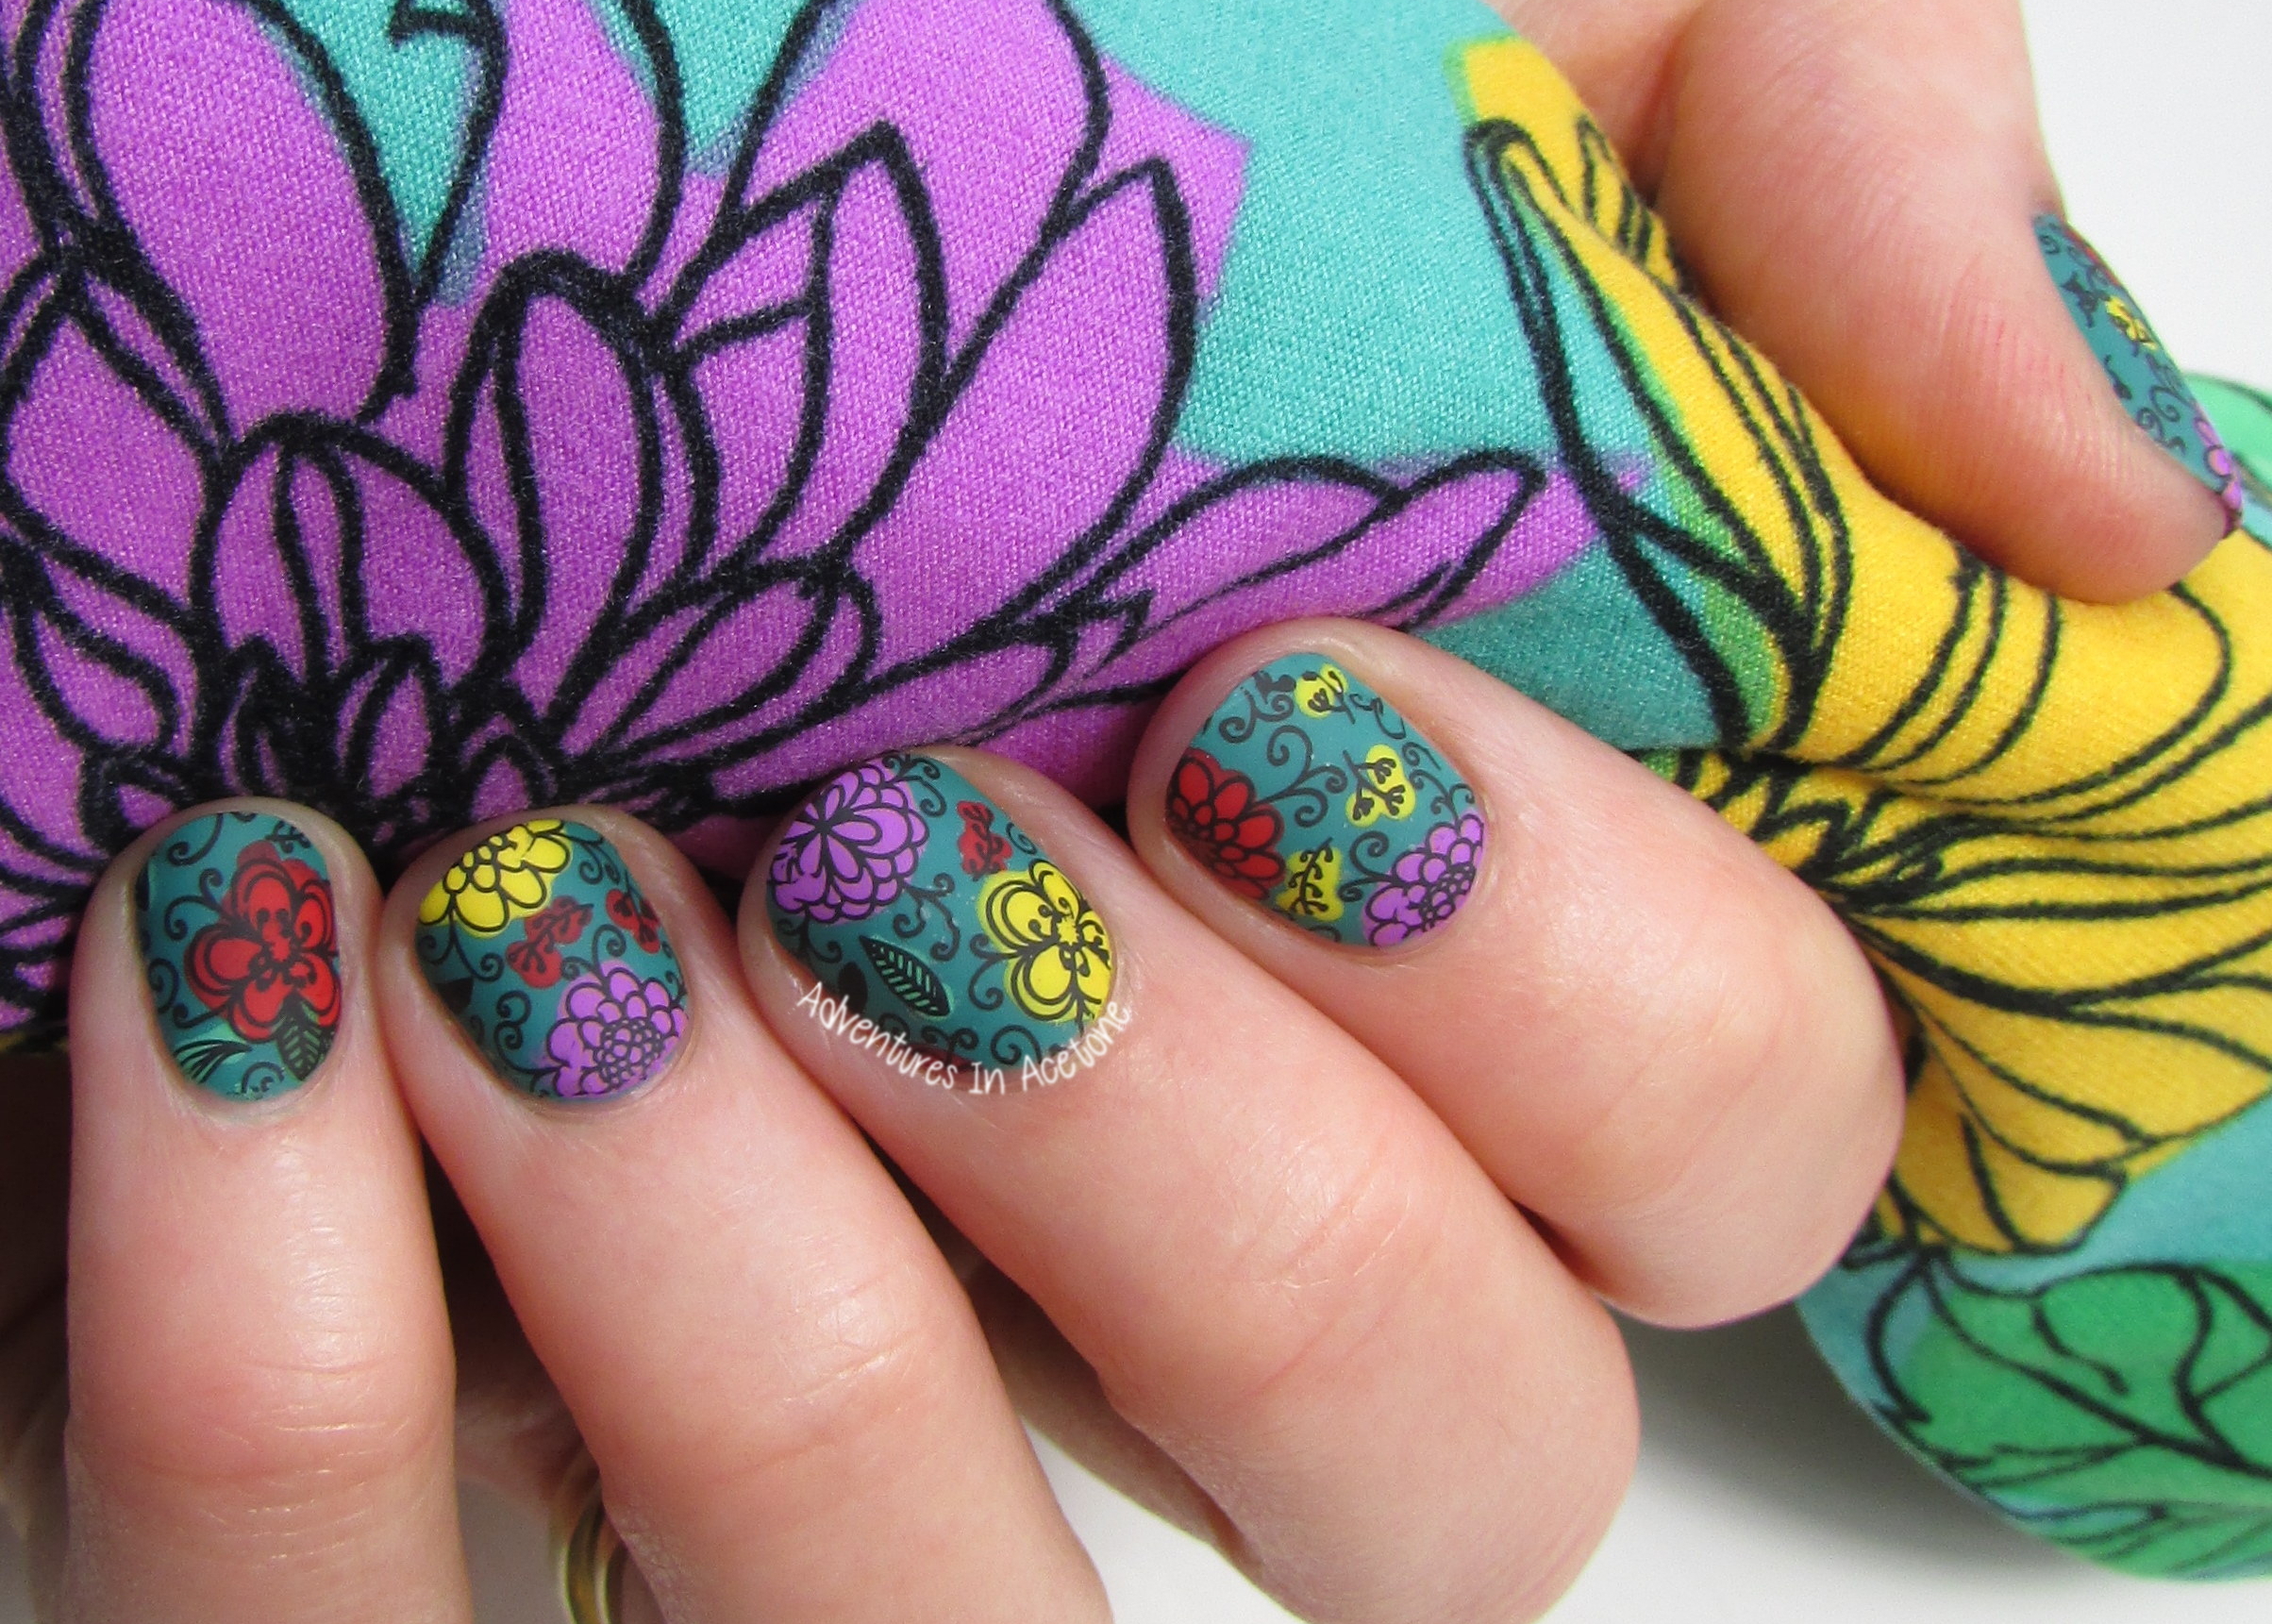 LuLaRoe Floral Leggings Inspired Nail Art! - Adventures In Acetone